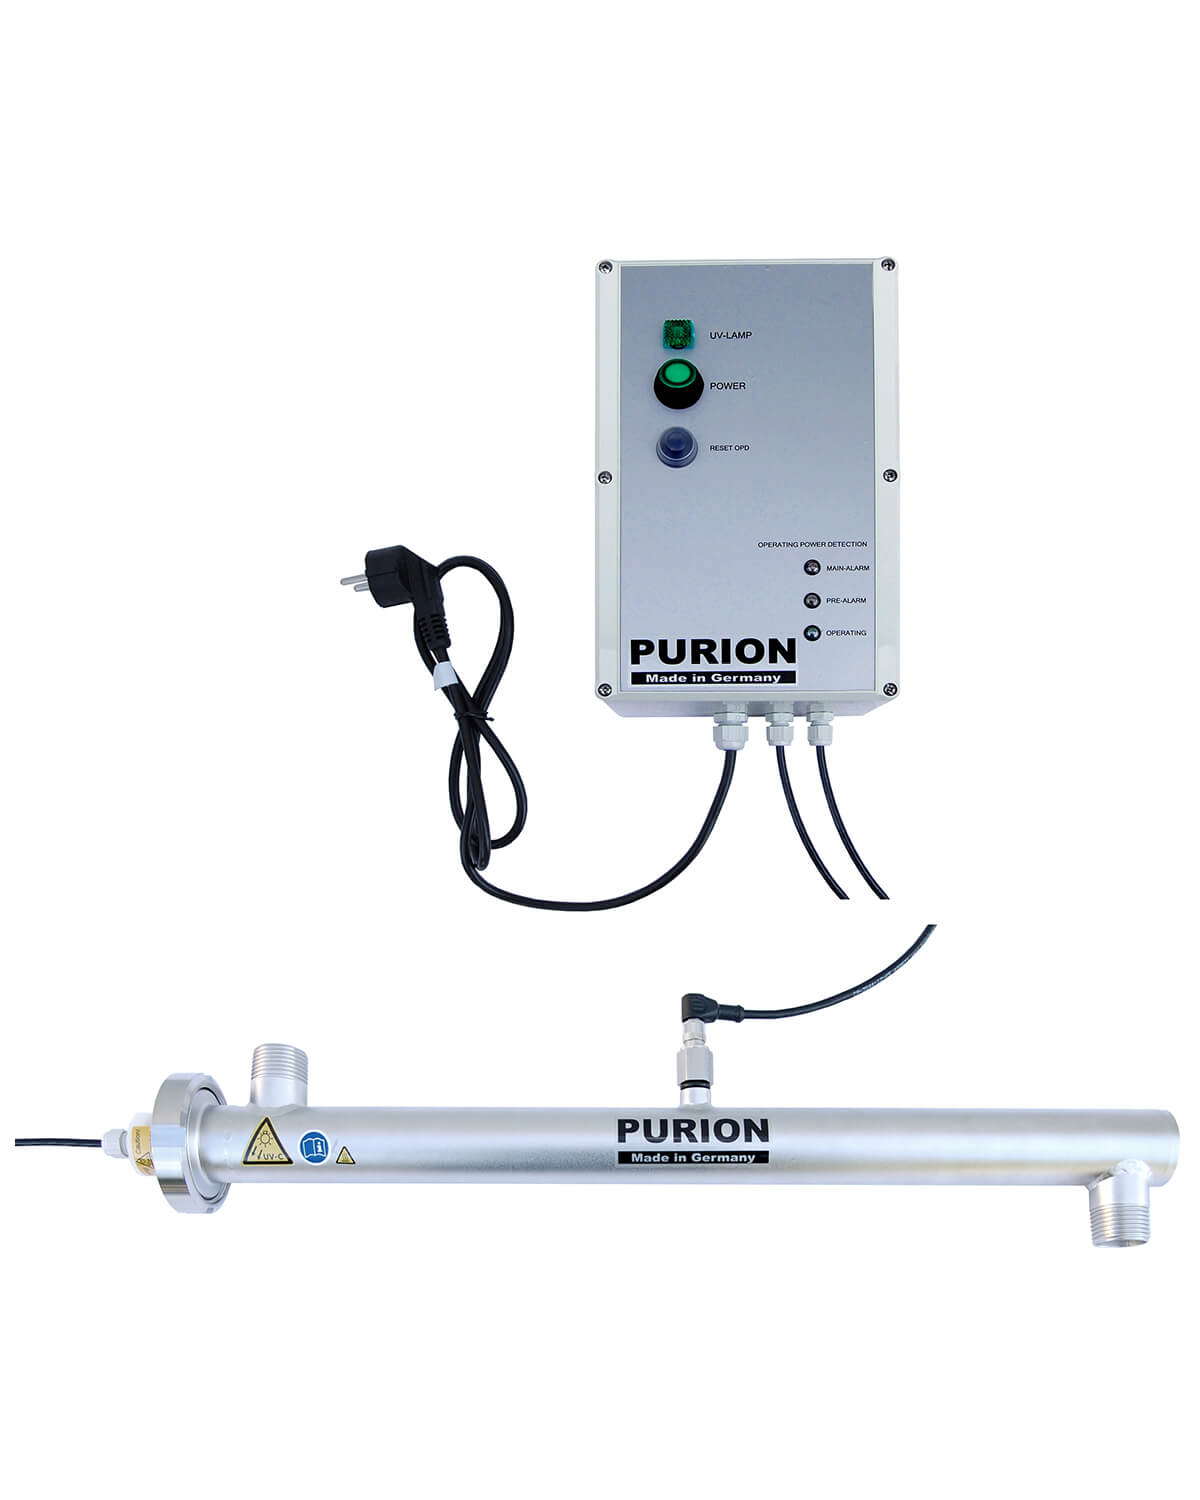 PURION 2000 OPD ist ein UV-Strahler der PURION GmbH, der für eine effektive Entkeimung von Trinkwasser sorgt.